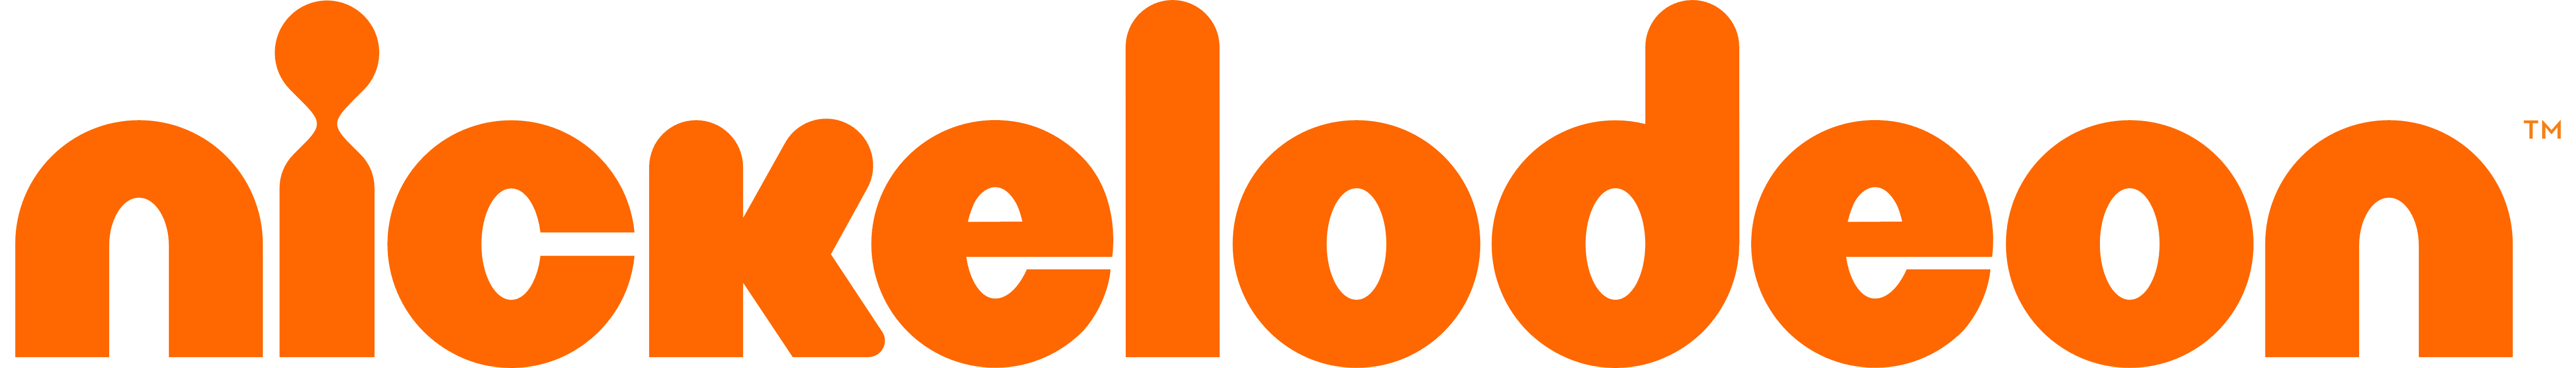 Nickelodeon_logo_logotype_2